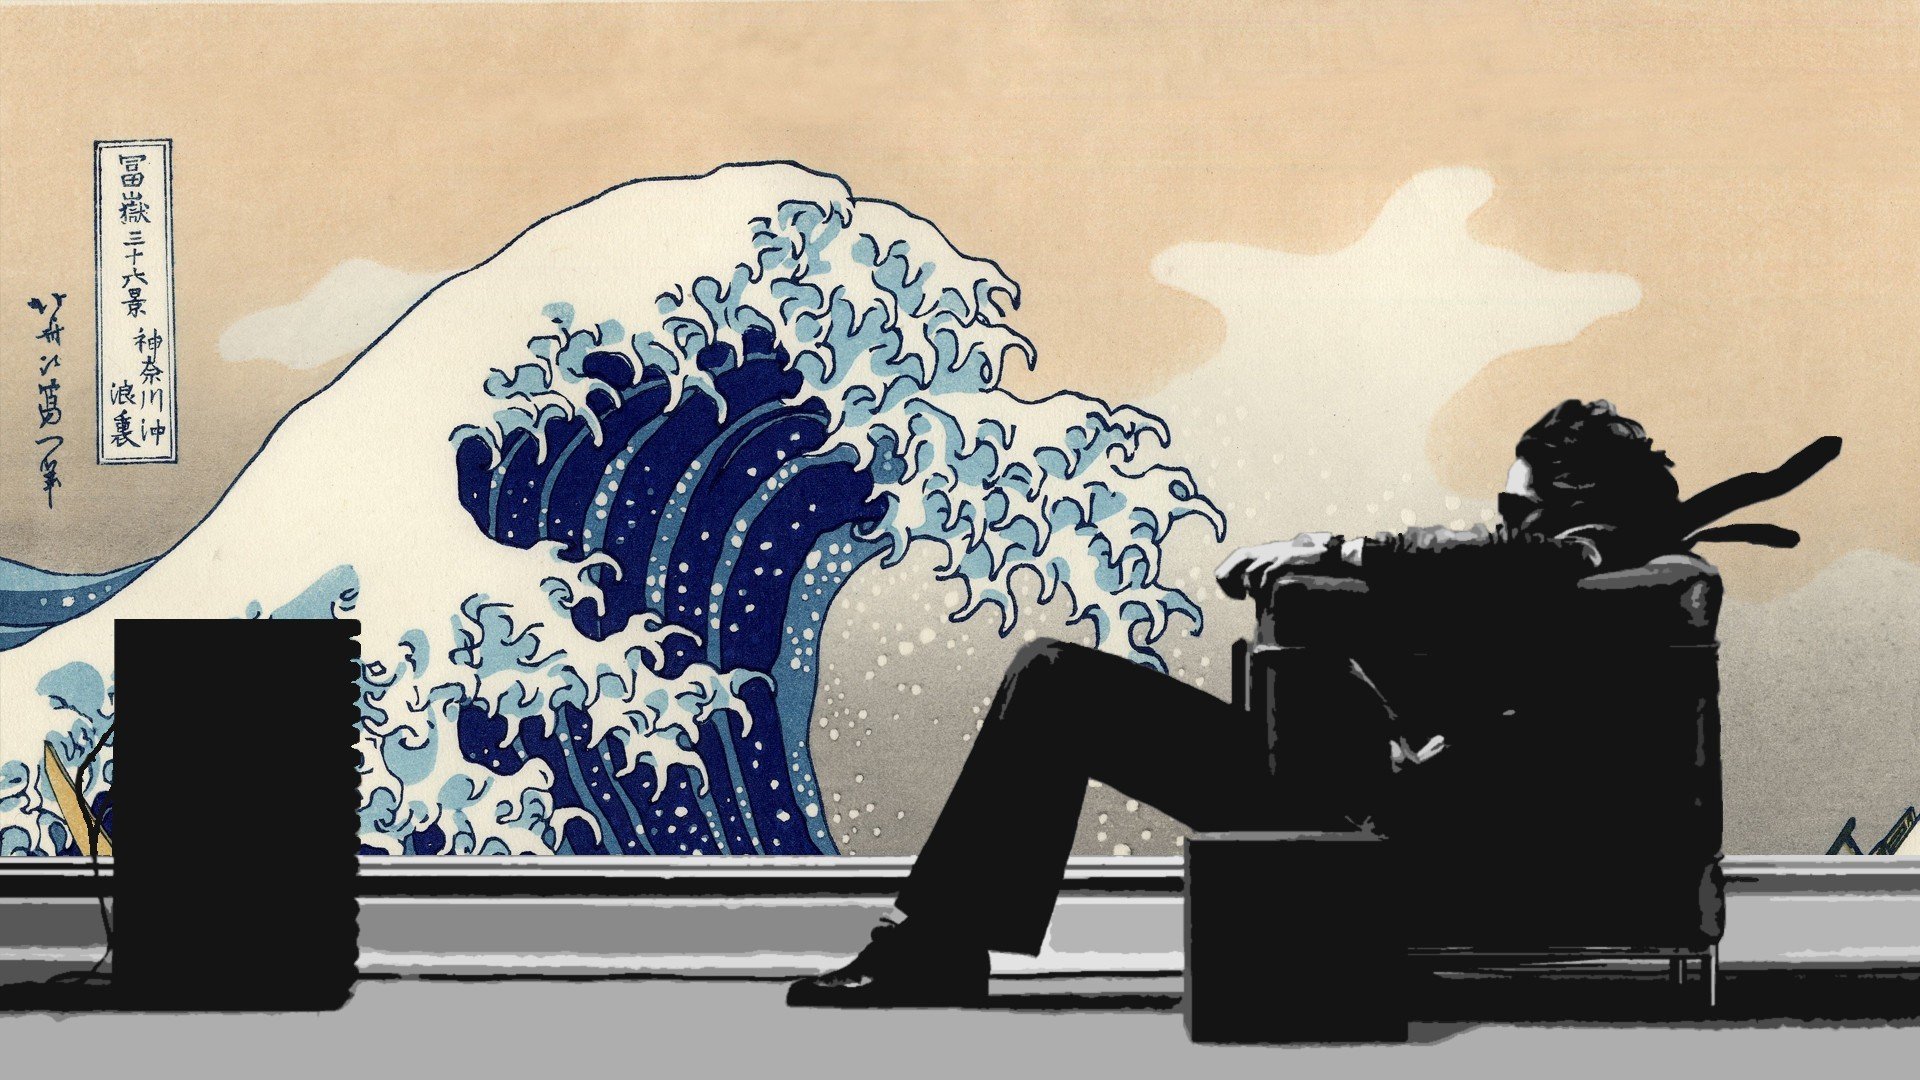 Hitachi Maxell, The Great Wave off Kanagawa Wallpaper